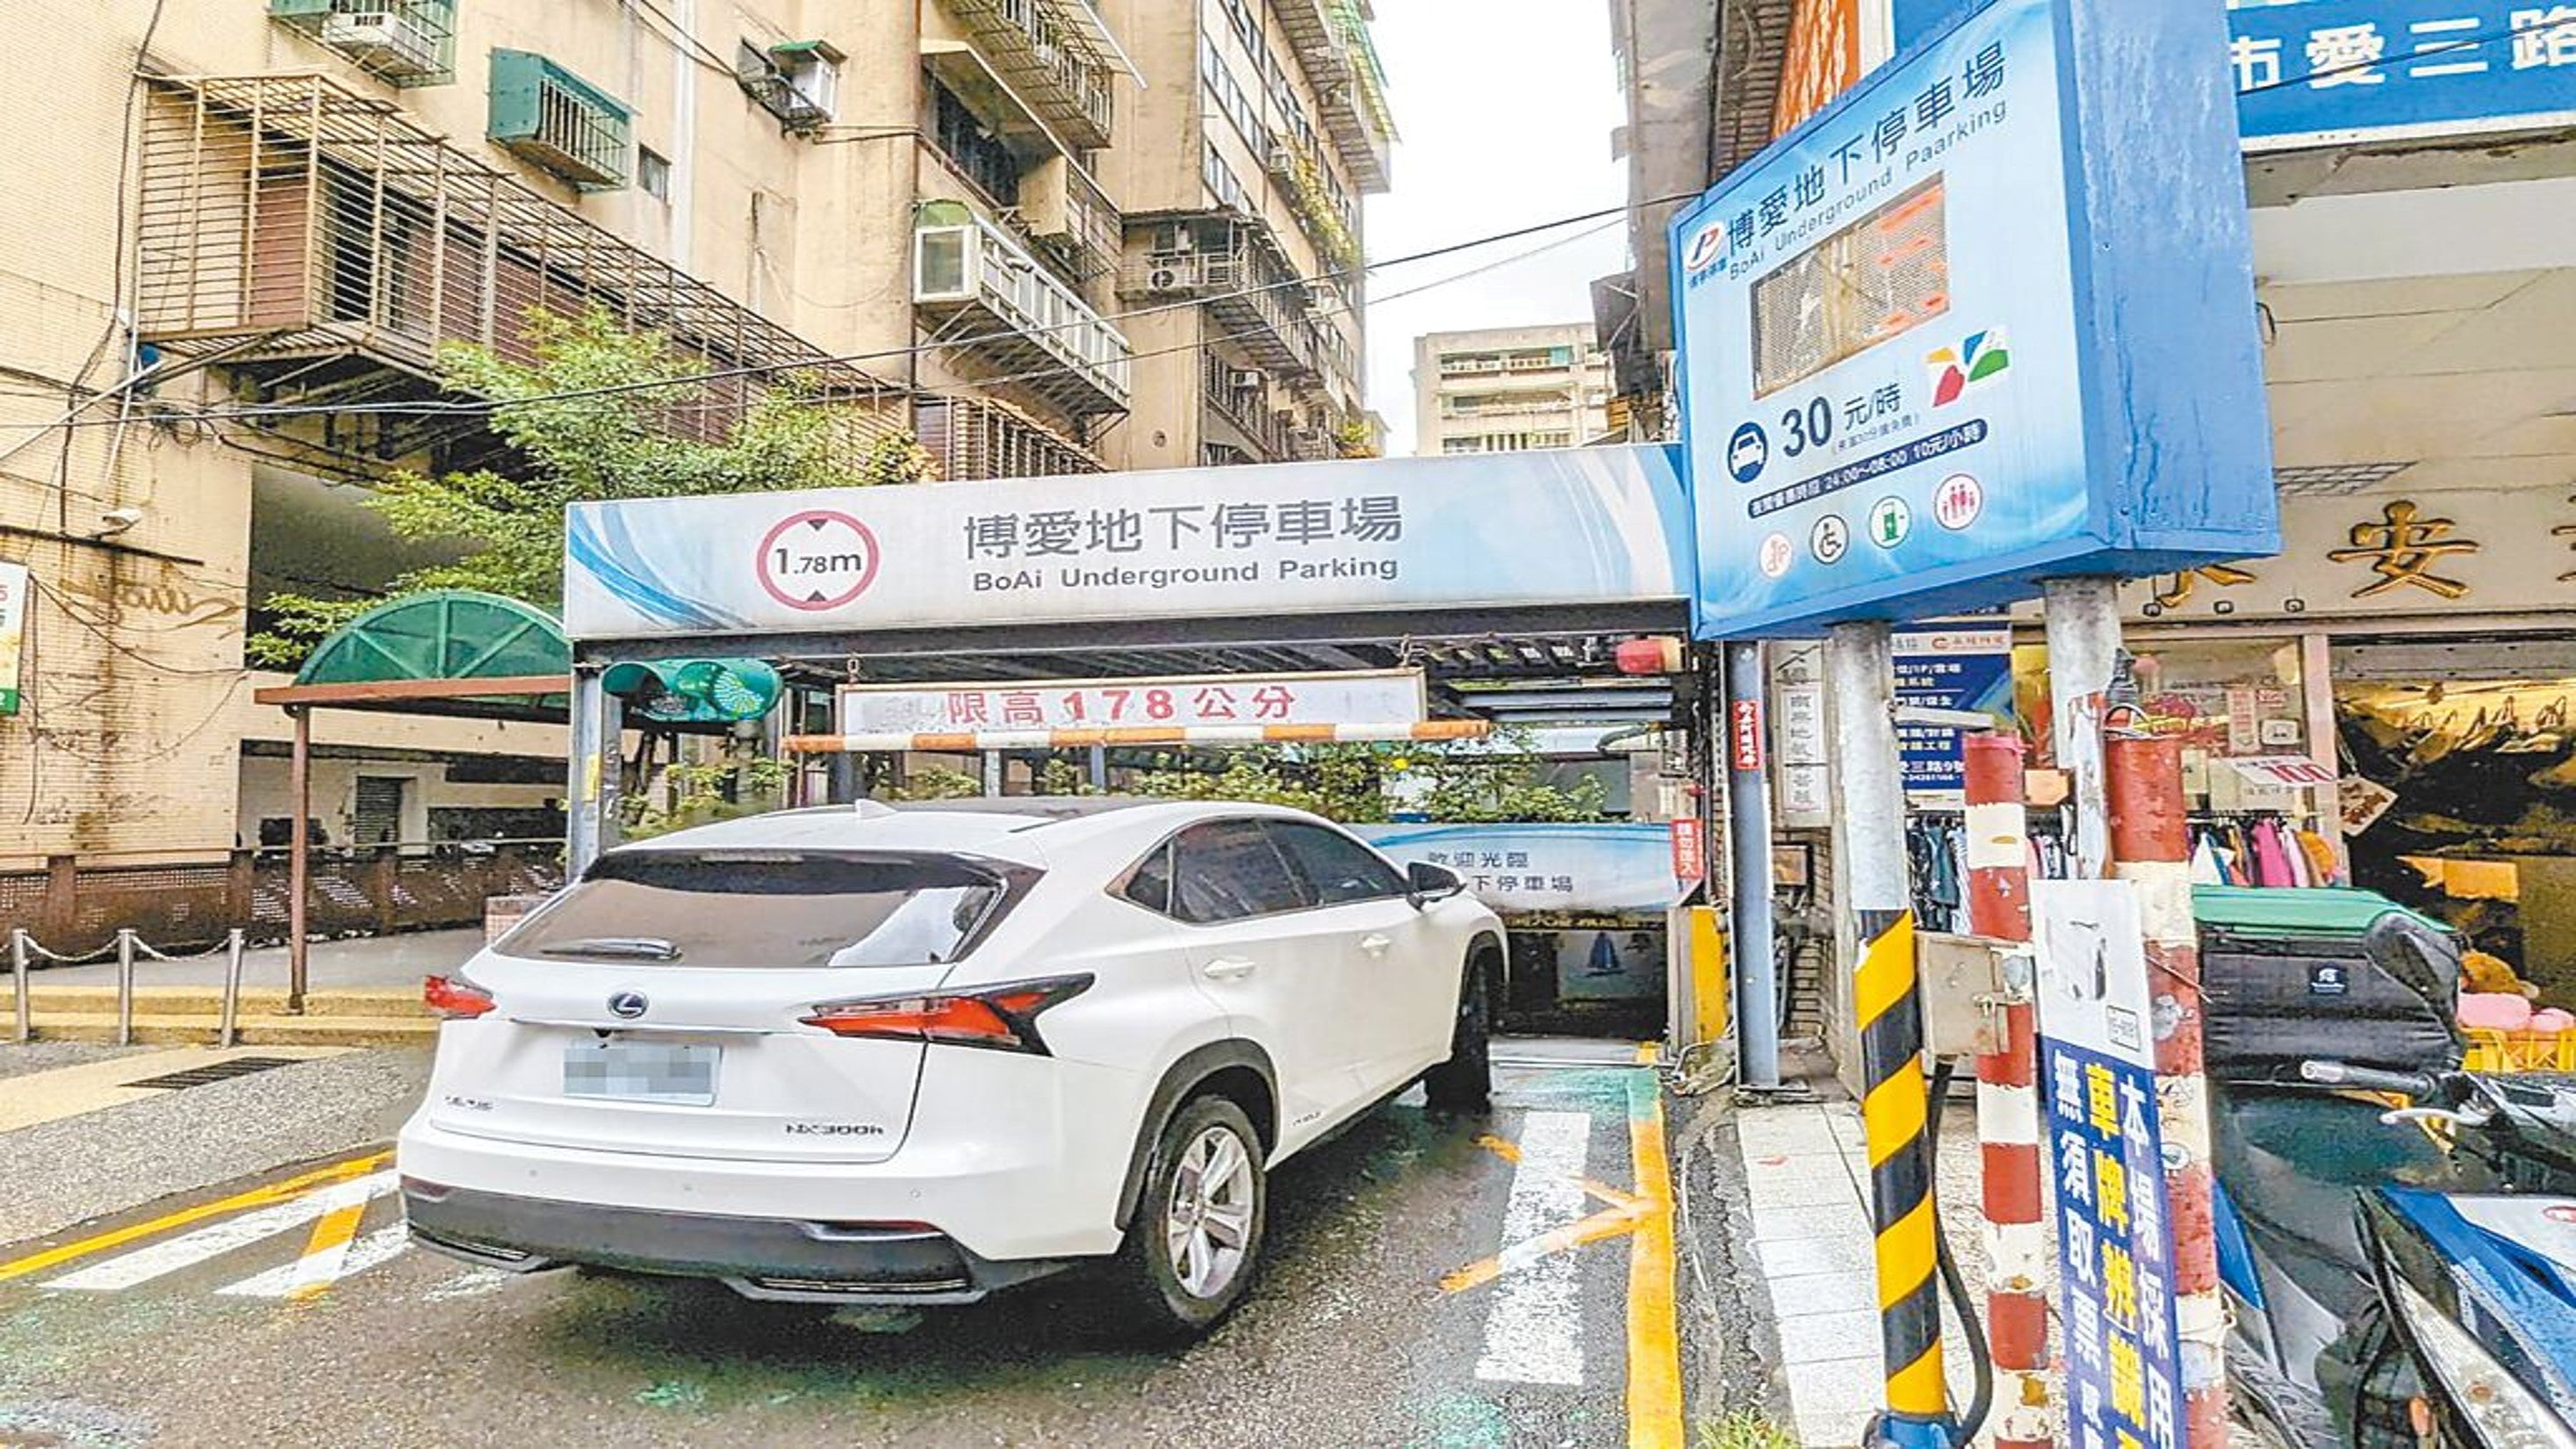 中國時報-基隆博愛停車場翻修 明年4月前開放 - 停車市場